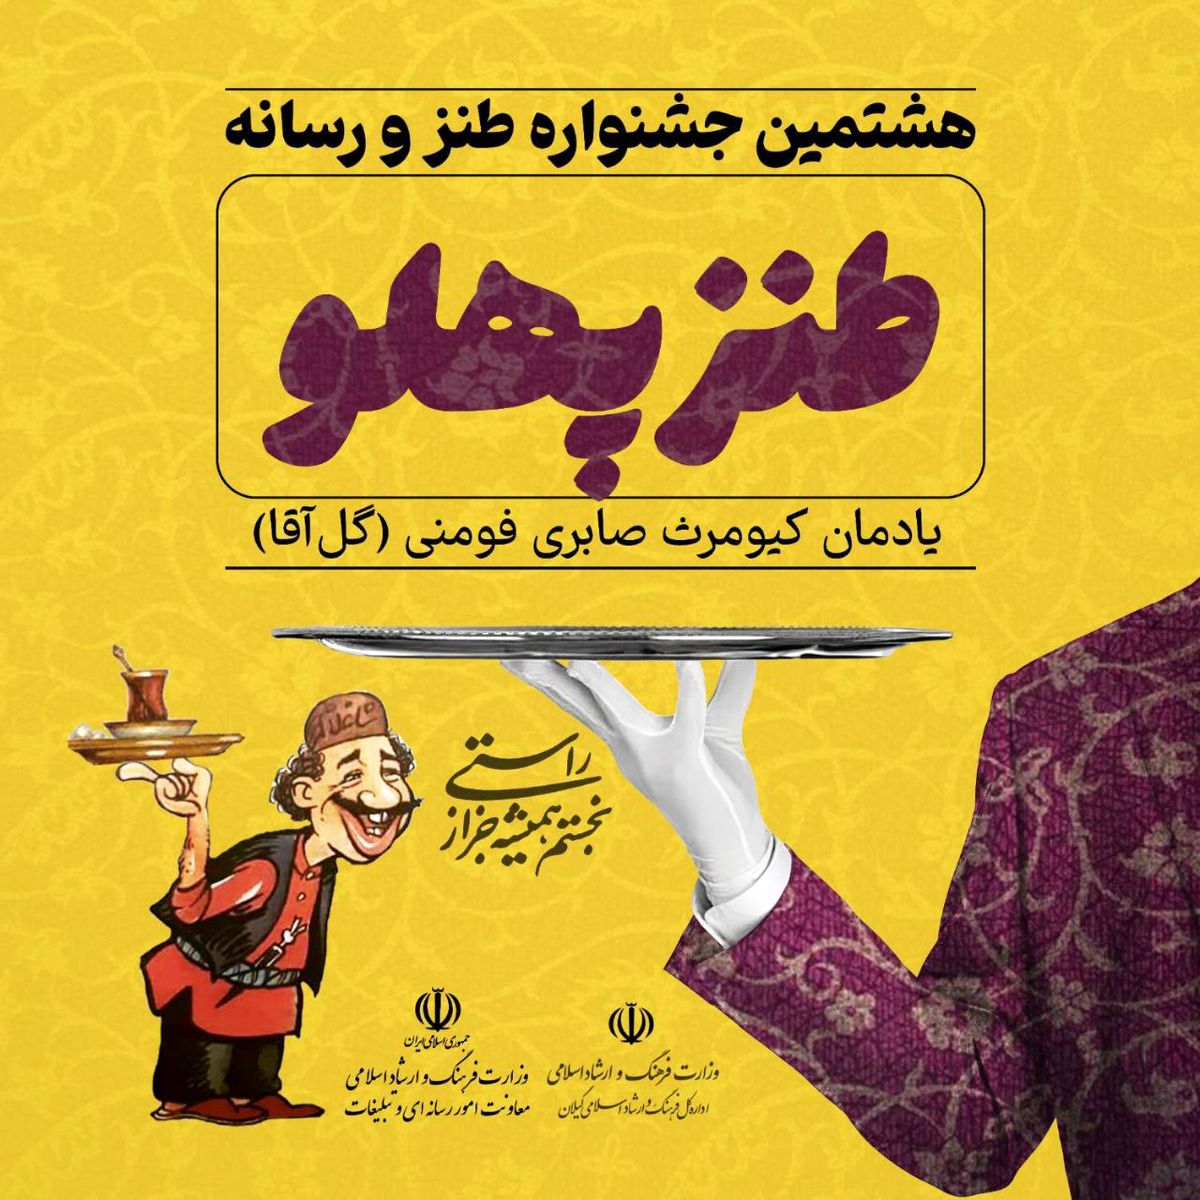 31 فروردین آخرین مهلت هشتمین جشنواره ملی طنز و رسانه "طنزپهلو"